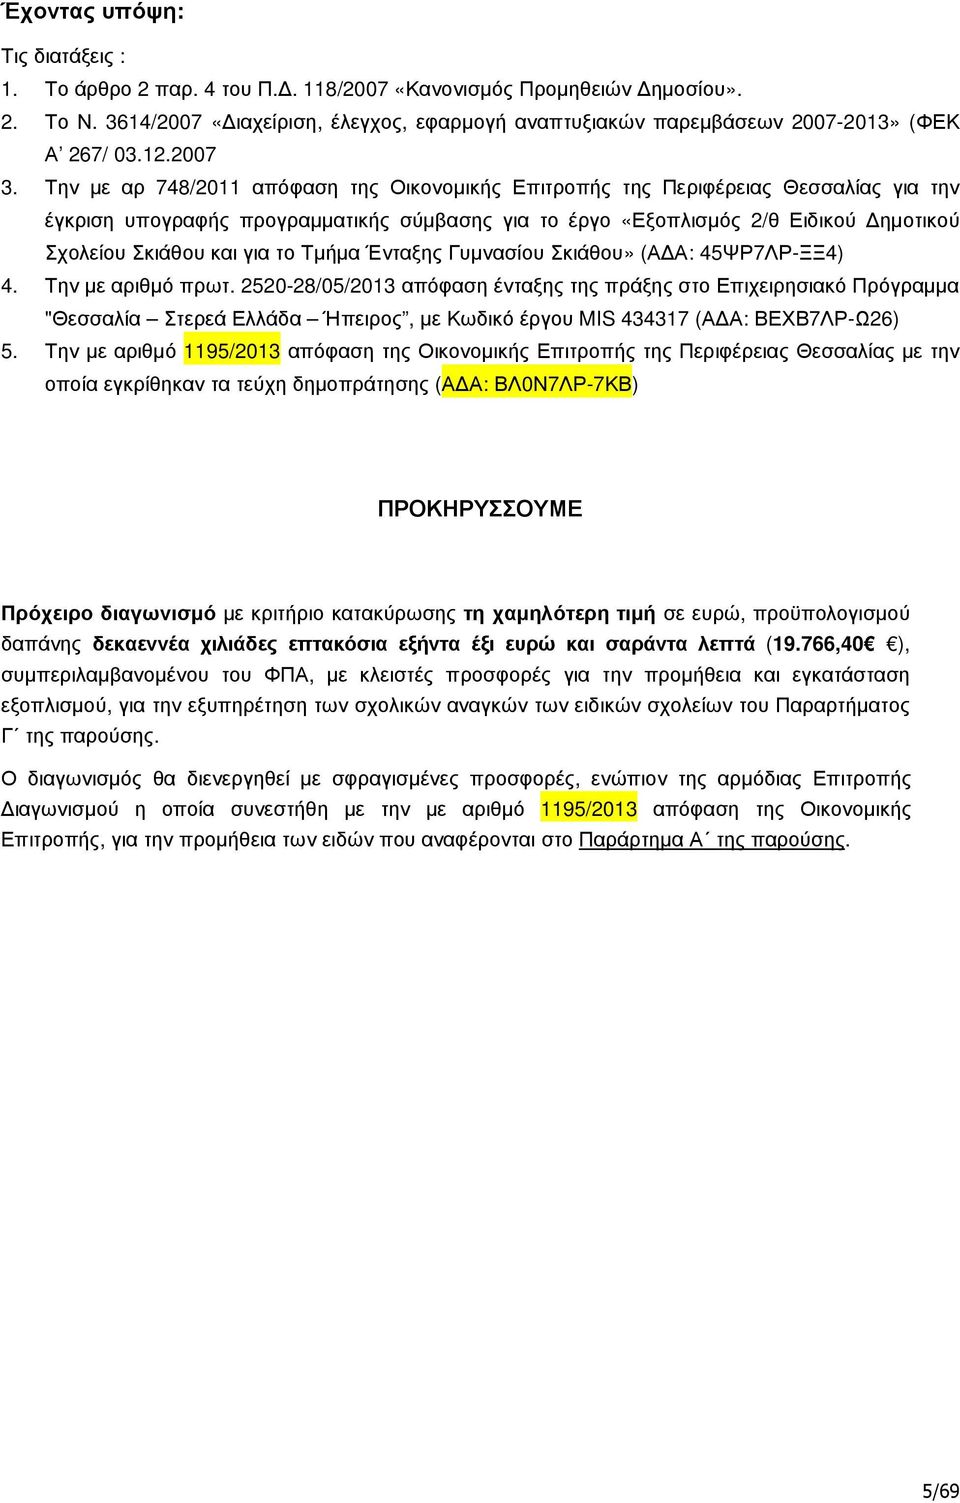 Την µε αρ 748/2011 απόφαση της Οικονοµικής Επιτροπής της Περιφέρειας Θεσσαλίας για την έγκριση υπογραφής προγραµµατικής σύµβασης για το έργο «Εξοπλισµός 2/θ Ειδικού ηµοτικού Σχολείου Σκιάθου και για